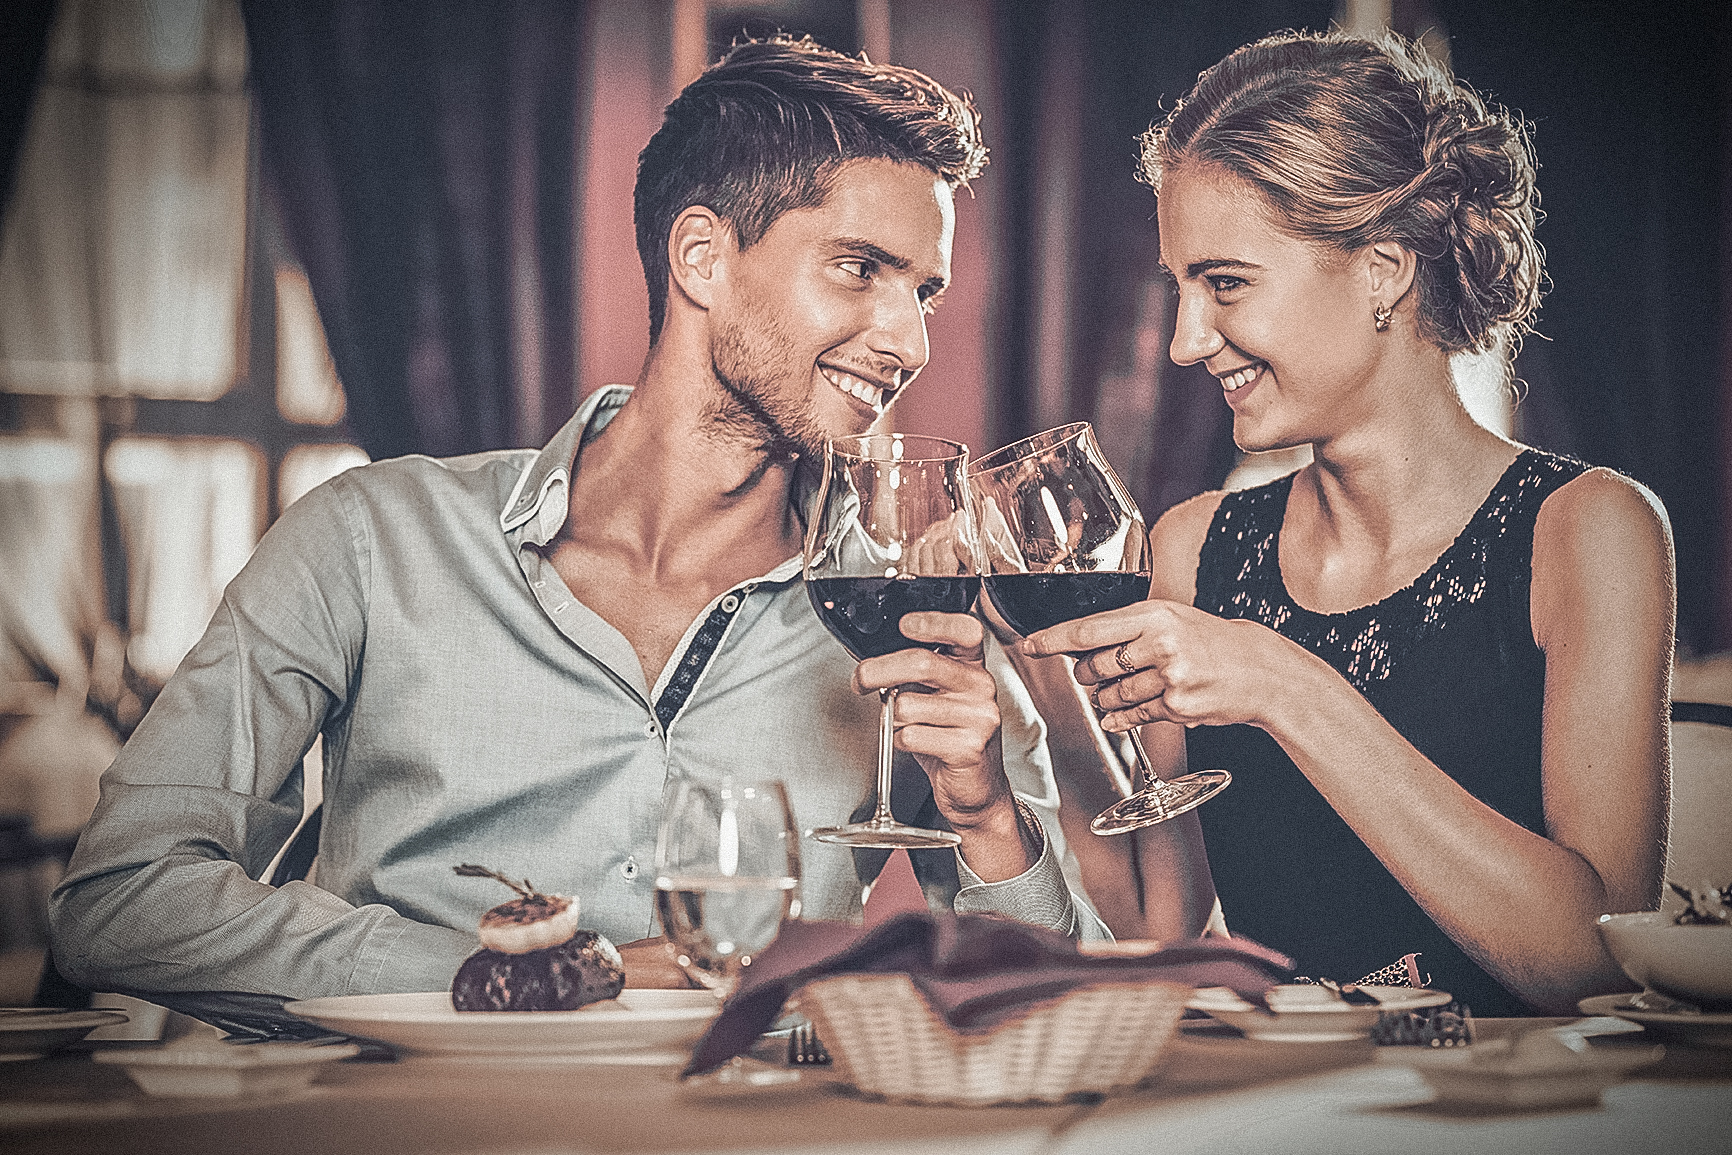 Секс во время свидания более желаем чем поход в ресторан